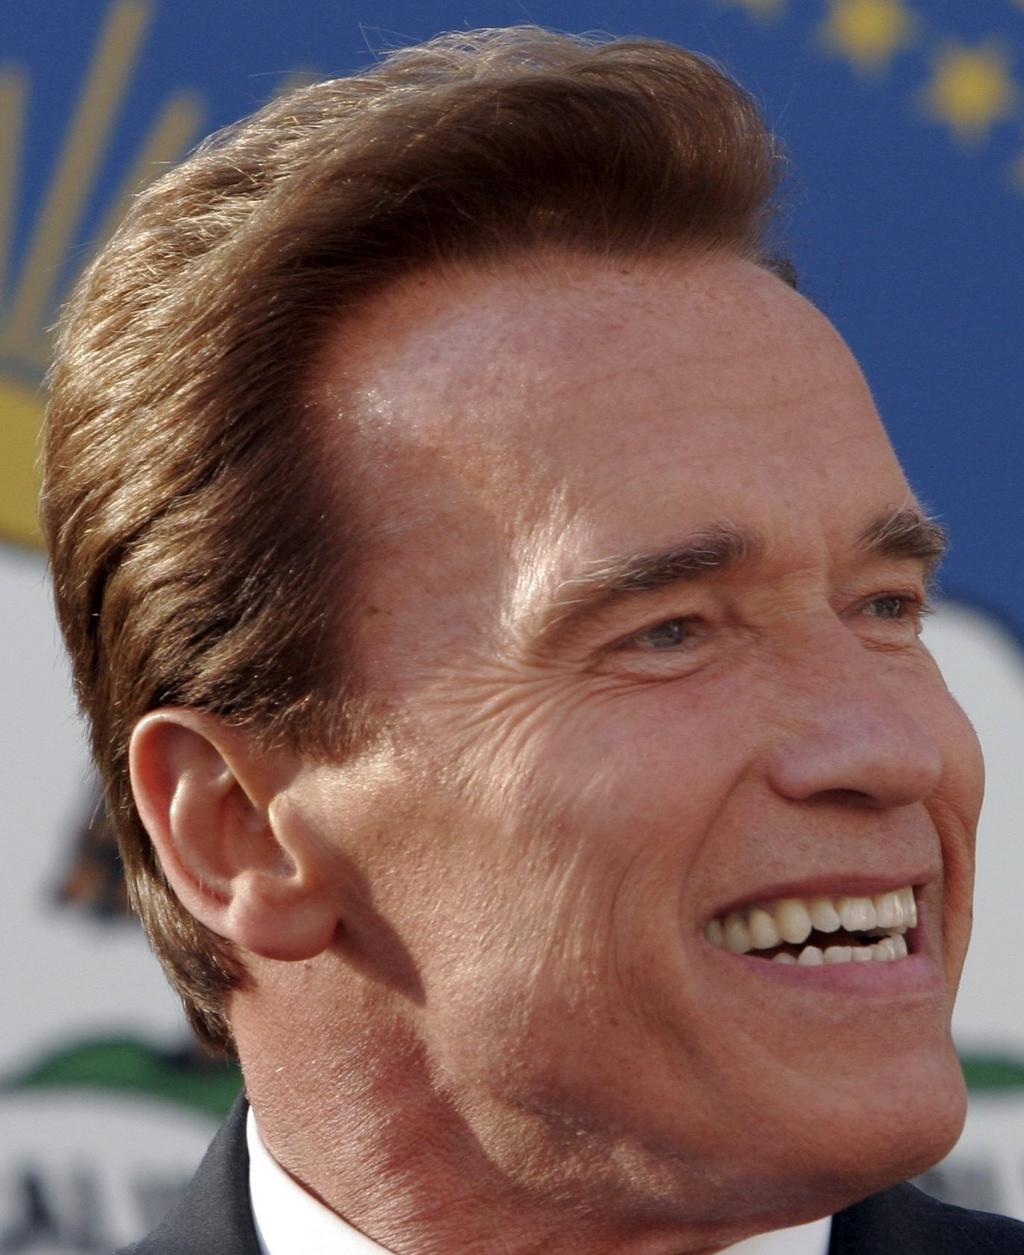 Alle US-Präsidenten sind in der USA geboren. Schwarzenegger ist US-Präsident. Schwarzenegger ist in der USA geboren. eine wahre und eine falsche Prämisse falsche Konklusion trotzdem korrekte Inferenz!